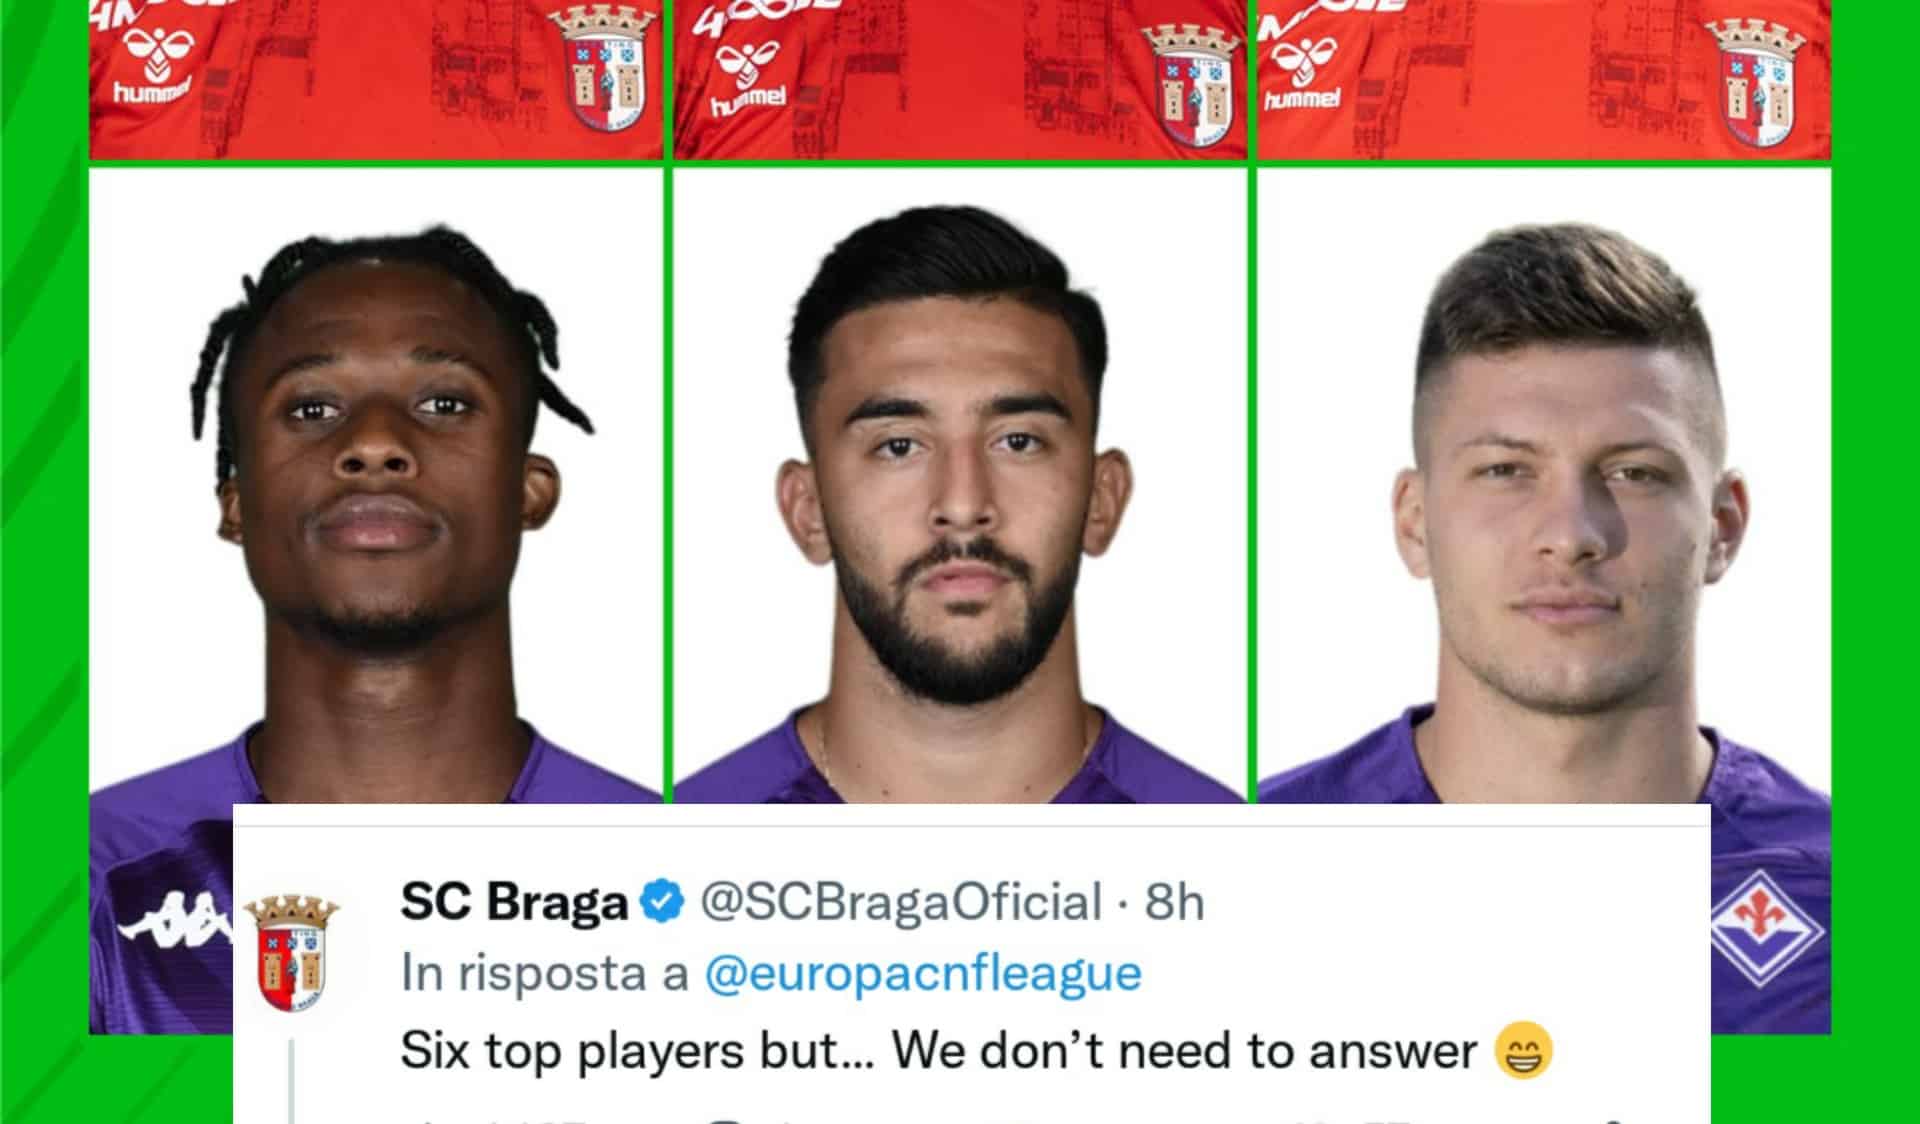 Conference poste la photo de Nico, Jovic et Kouamè et demande : « Quel trident choisis-tu ? »  Braga répond